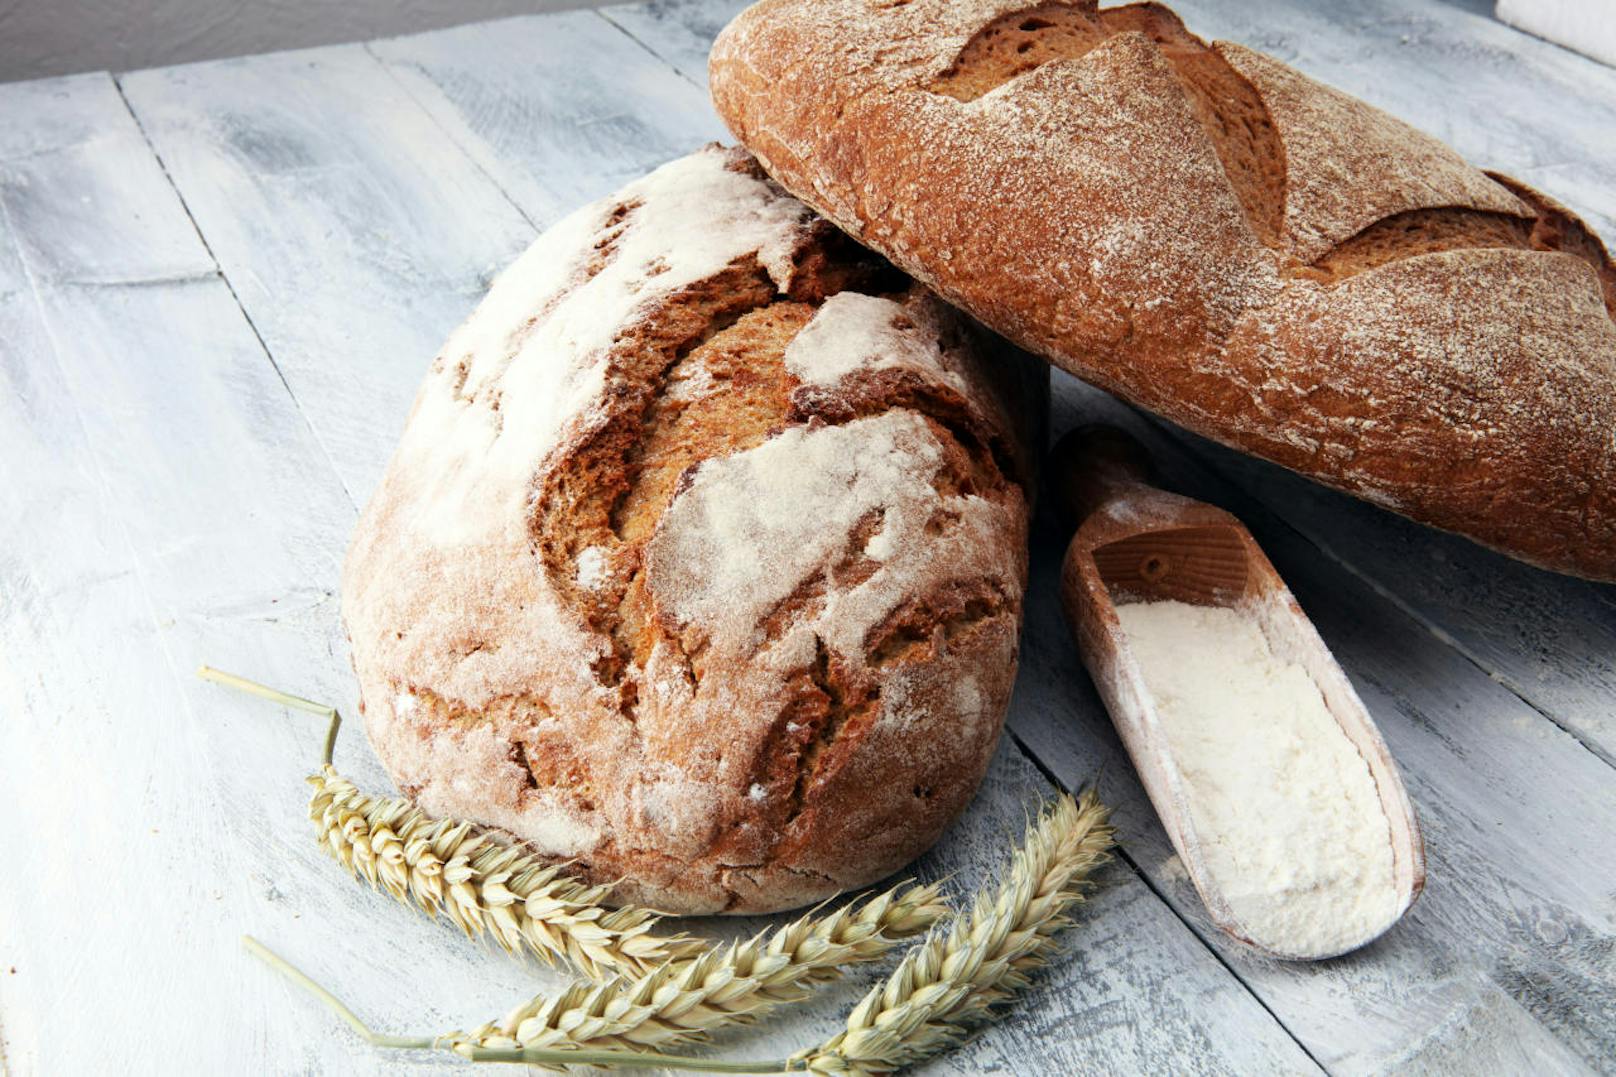 Brot sollte man in Maßen zu sich nehmen, da es nicht die gleiche Menge Wasser wie stärkehaltige Kohlenhydrate wie Nudeln, Kartoffeln und Reis, und dadurch weniger sättigt. Meistens wird es auch eher als Beilage konsumiert, als als eigenständiges Nahrhungsmittel.